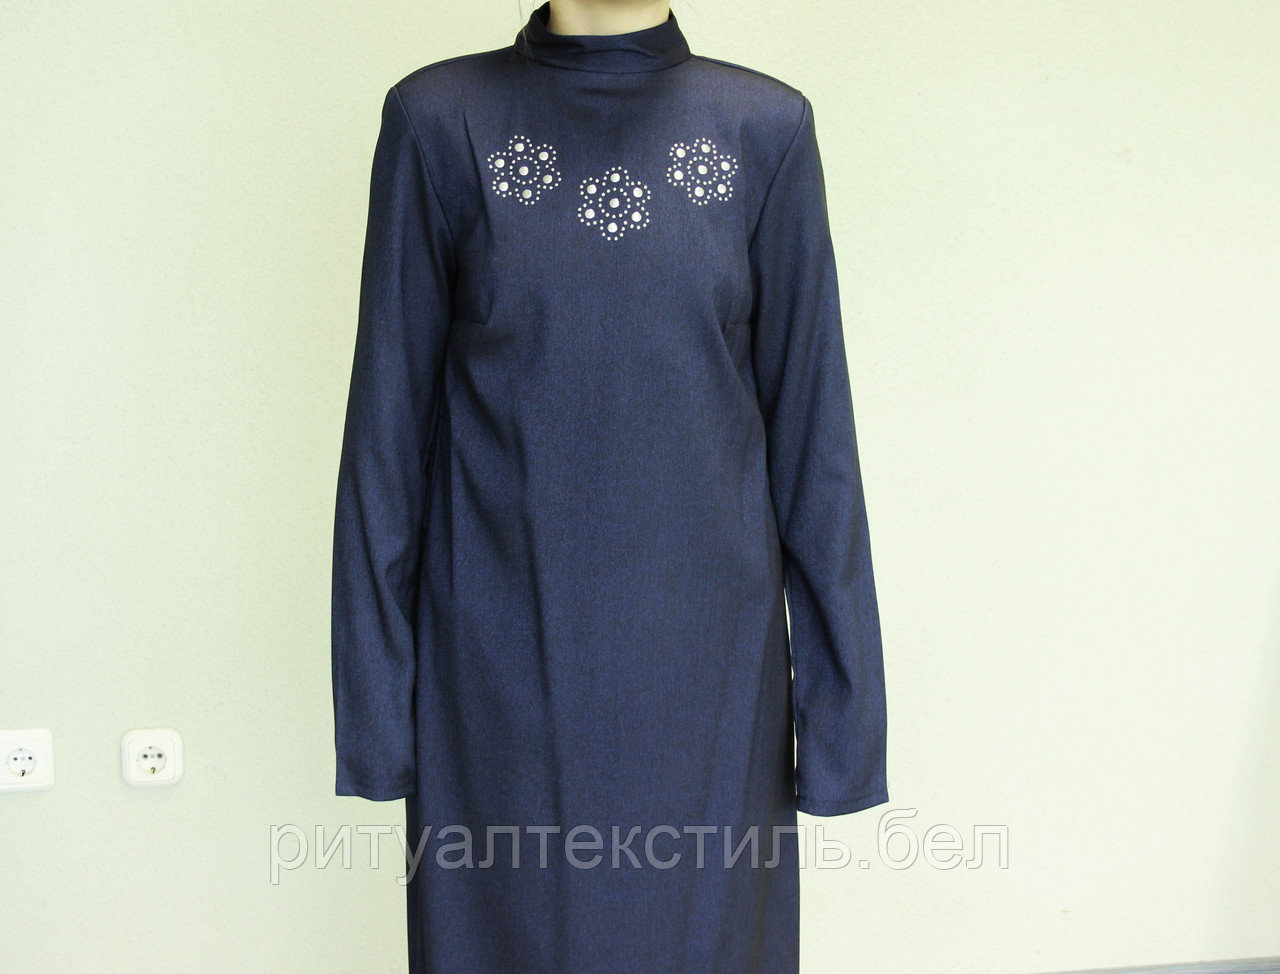 ОПТ. Платье женское ритуальное глубокий синий с аппликацией